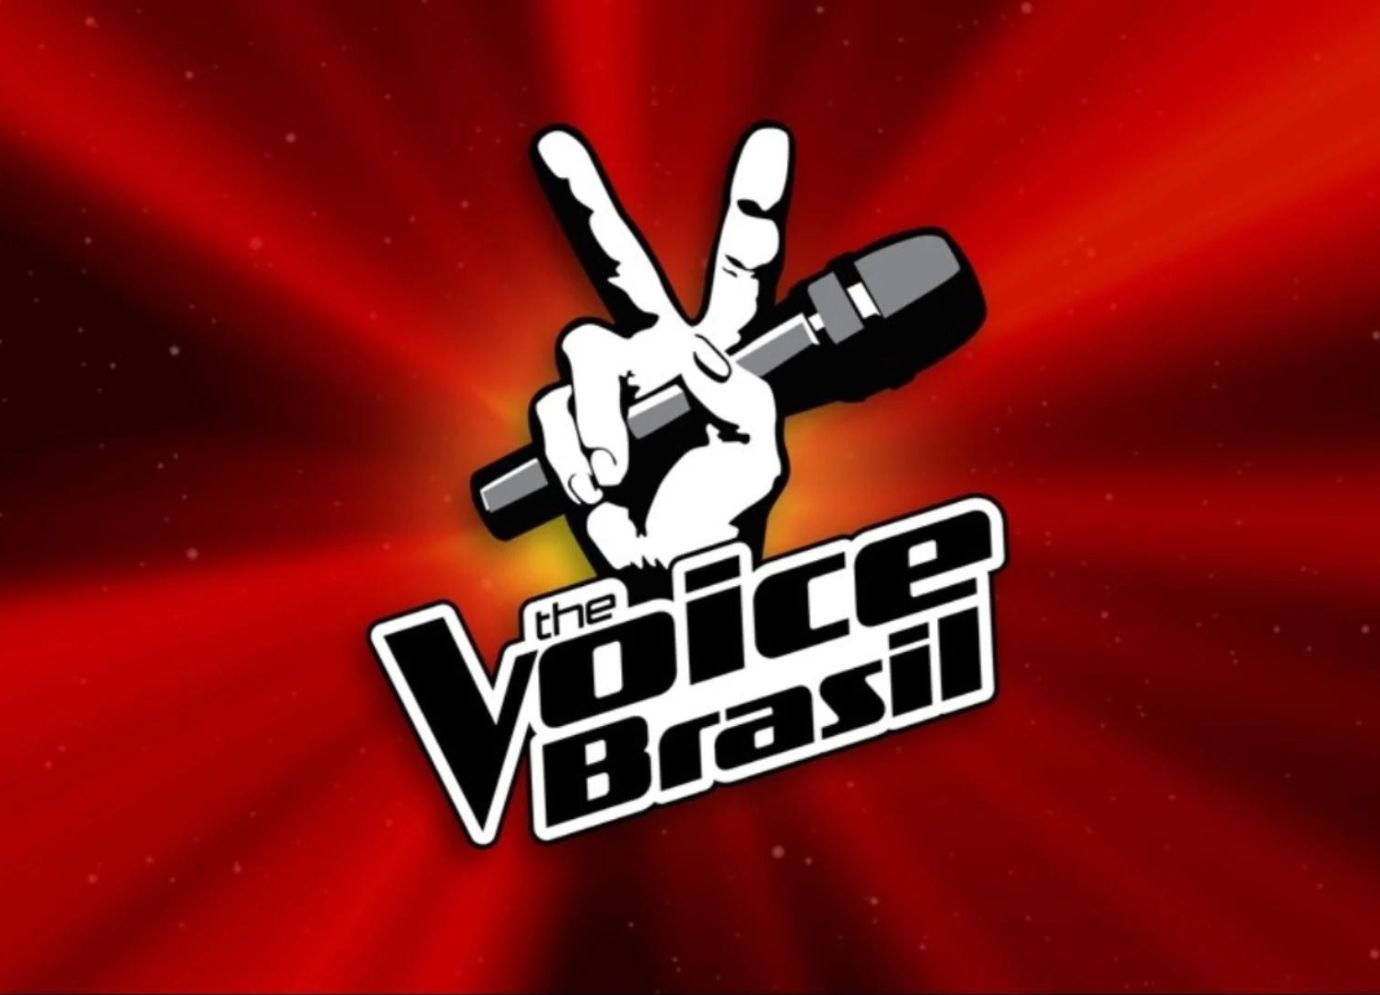 Entenda mais sobre o funcionamento do programa! Fonte: The Voice Brasil.